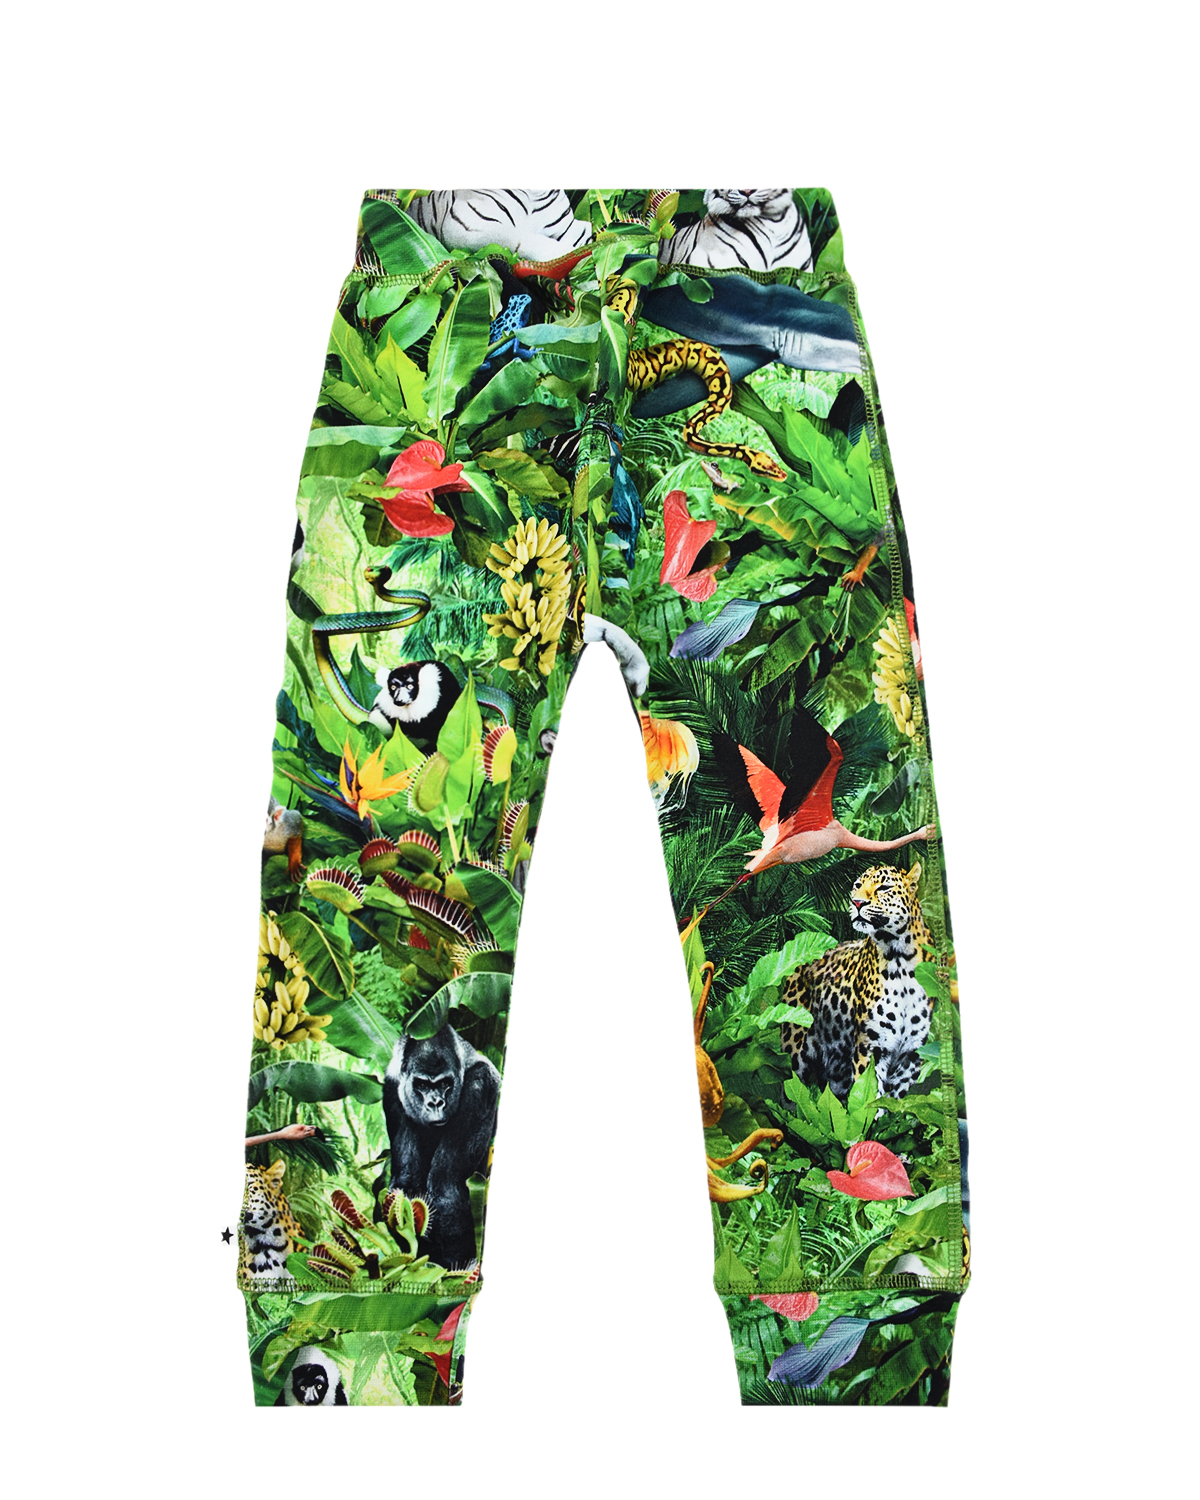 Спортивные брюки с принтом "Звери в джунглях" Molo детские, размер 74, цвет зеленый - фото 2